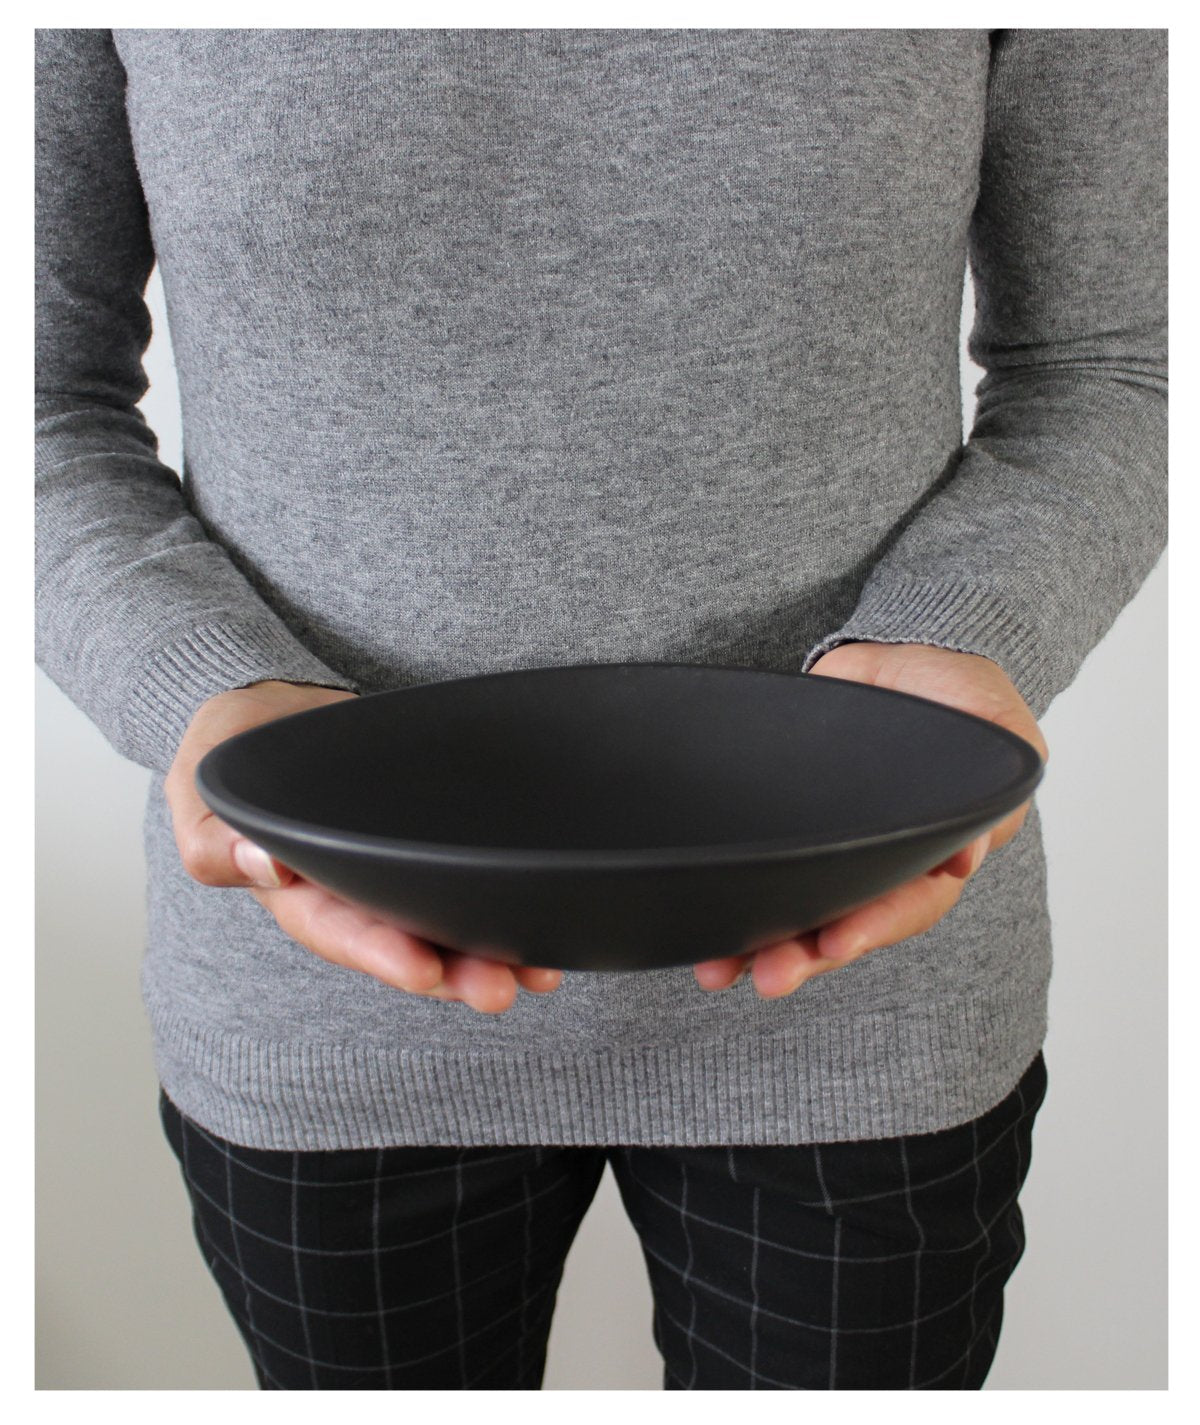 24cm Organic Shaped Pasta Bowl In Matte Black